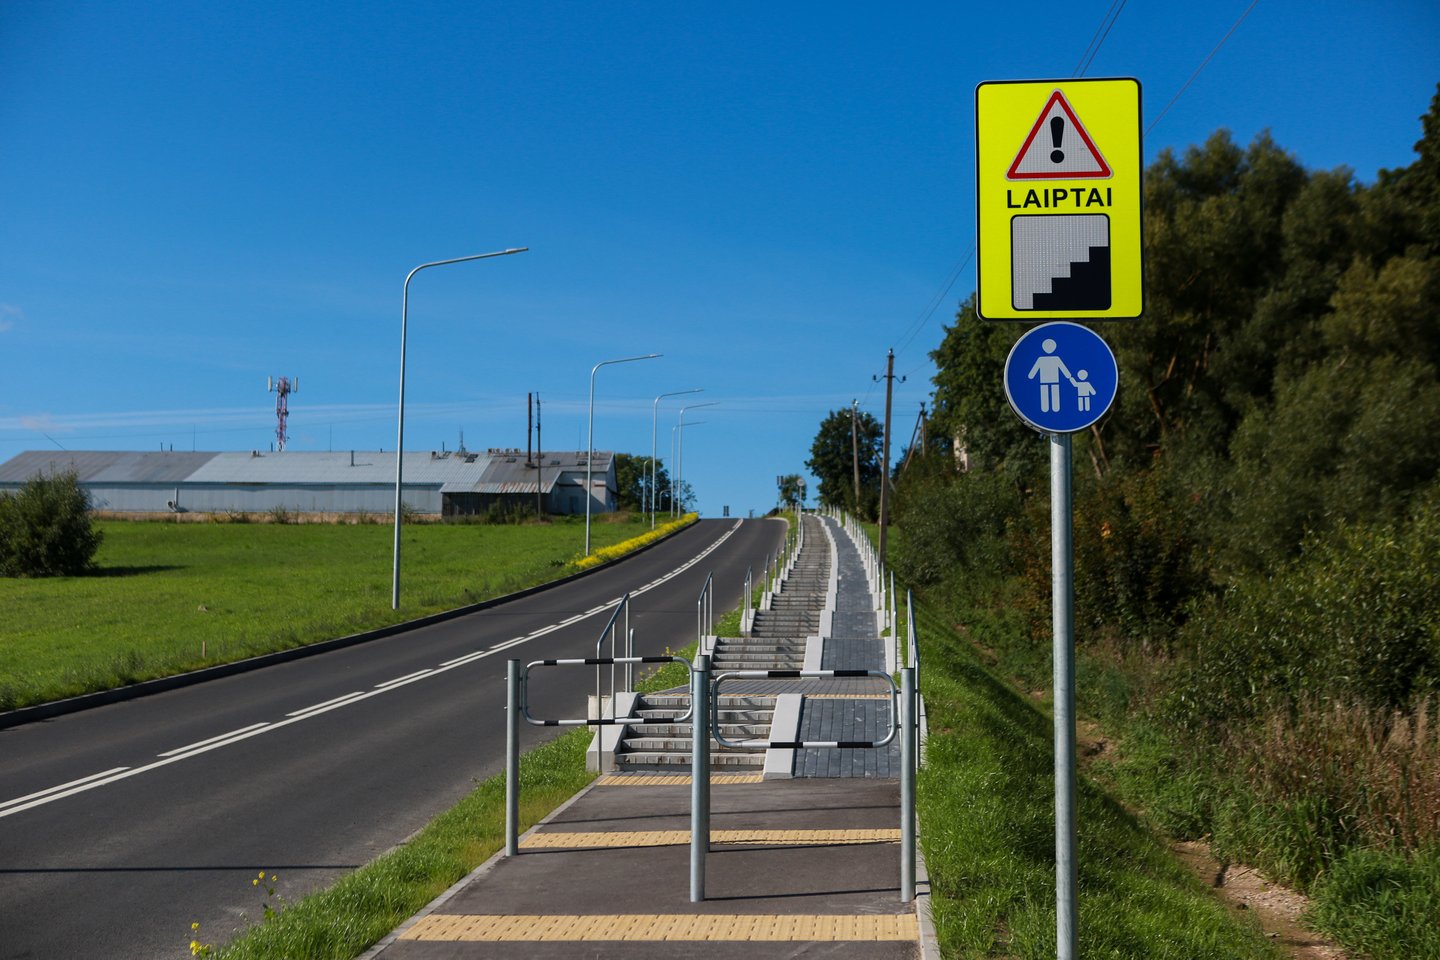 Per dešimtmetį dviračių takų tinklas turėtų išsiplėsti nuo dabartinių 3 tūkst. iki 5 tūkst. kilometrų, prioritetas bus skiriamas sujungti atskirus takus į trasas, sako susisiekimo ministras Marius Skuodis.<br>G.Bitvinsko nuotr.